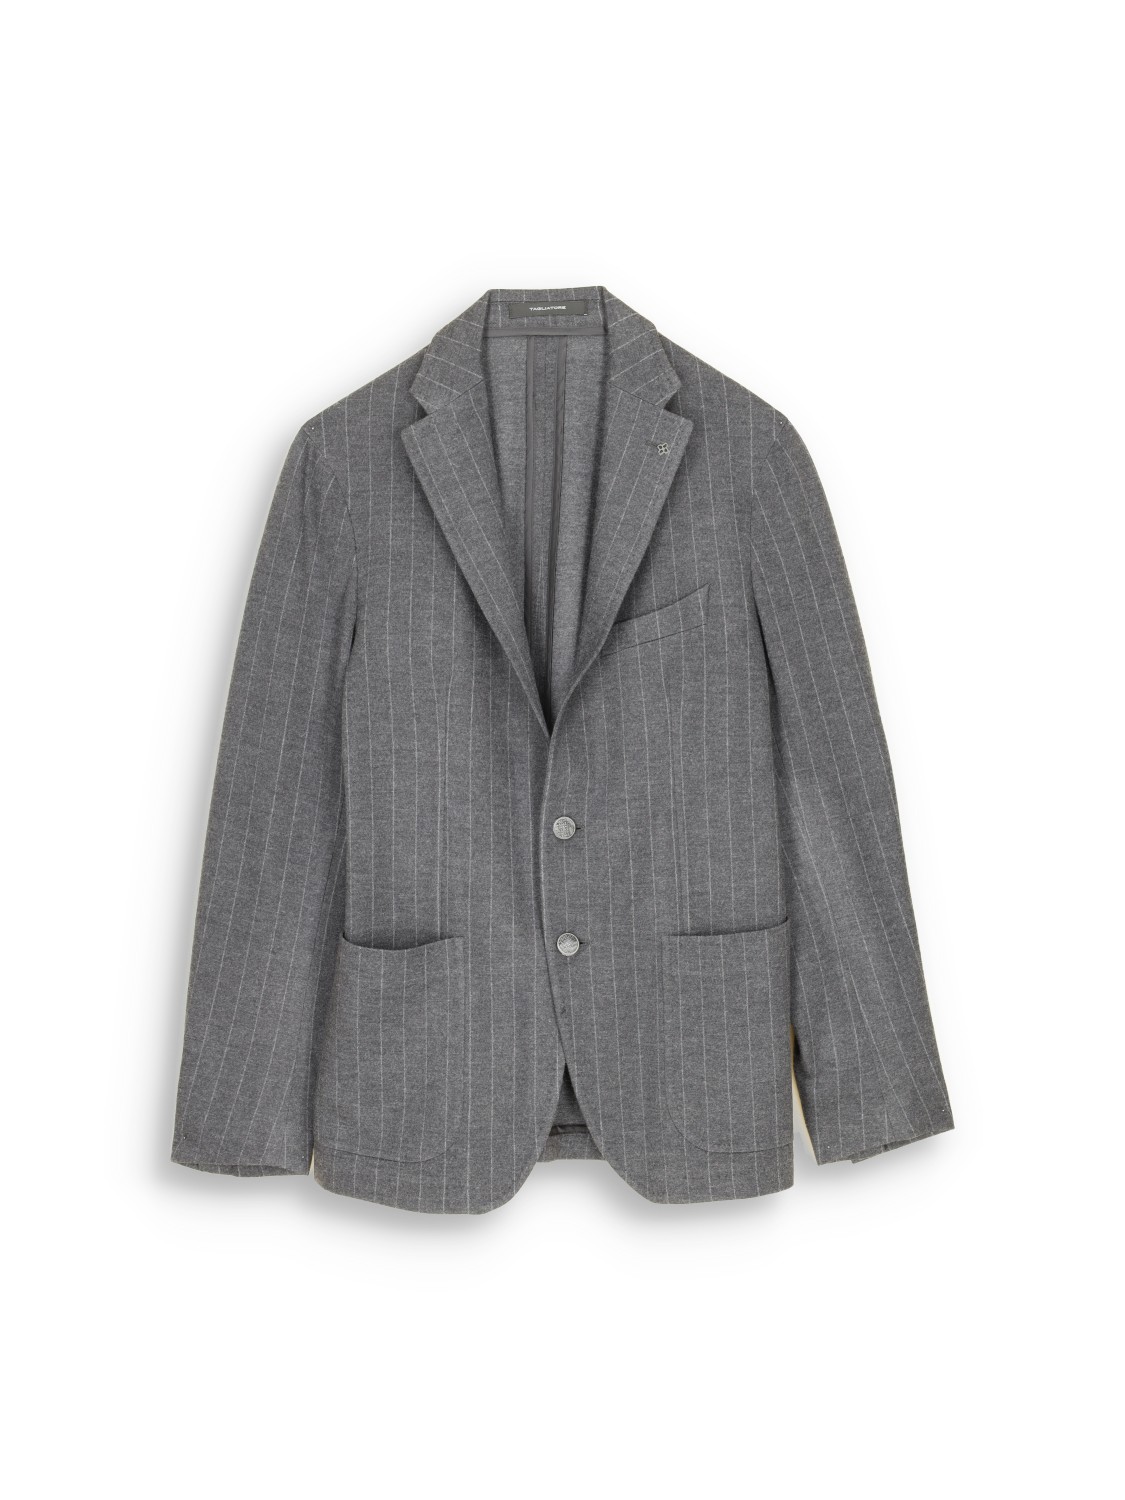 Tagliatore pinstripe suit with pure new wool – Nadelstreifen-Anzug aus Schurwoll-Mix  grau 48